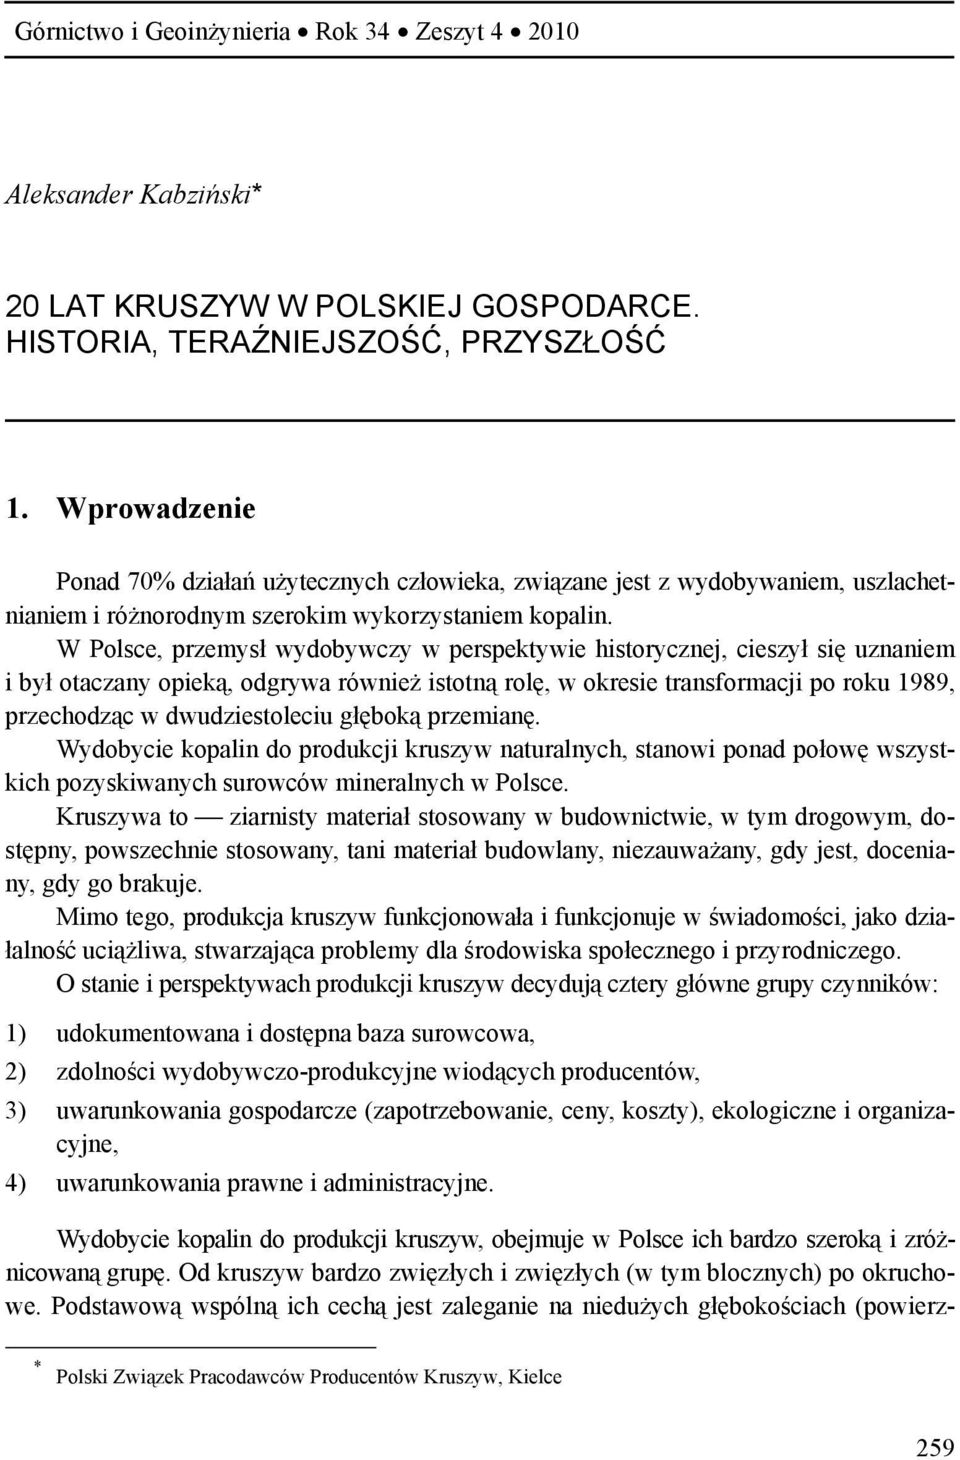 W Polsce, przemysł wydobywczy w perspektywie historycznej, cieszył się uznaniem i był otaczany opieką, odgrywa również istotną rolę, w okresie transformacji po roku 1989, przechodząc w